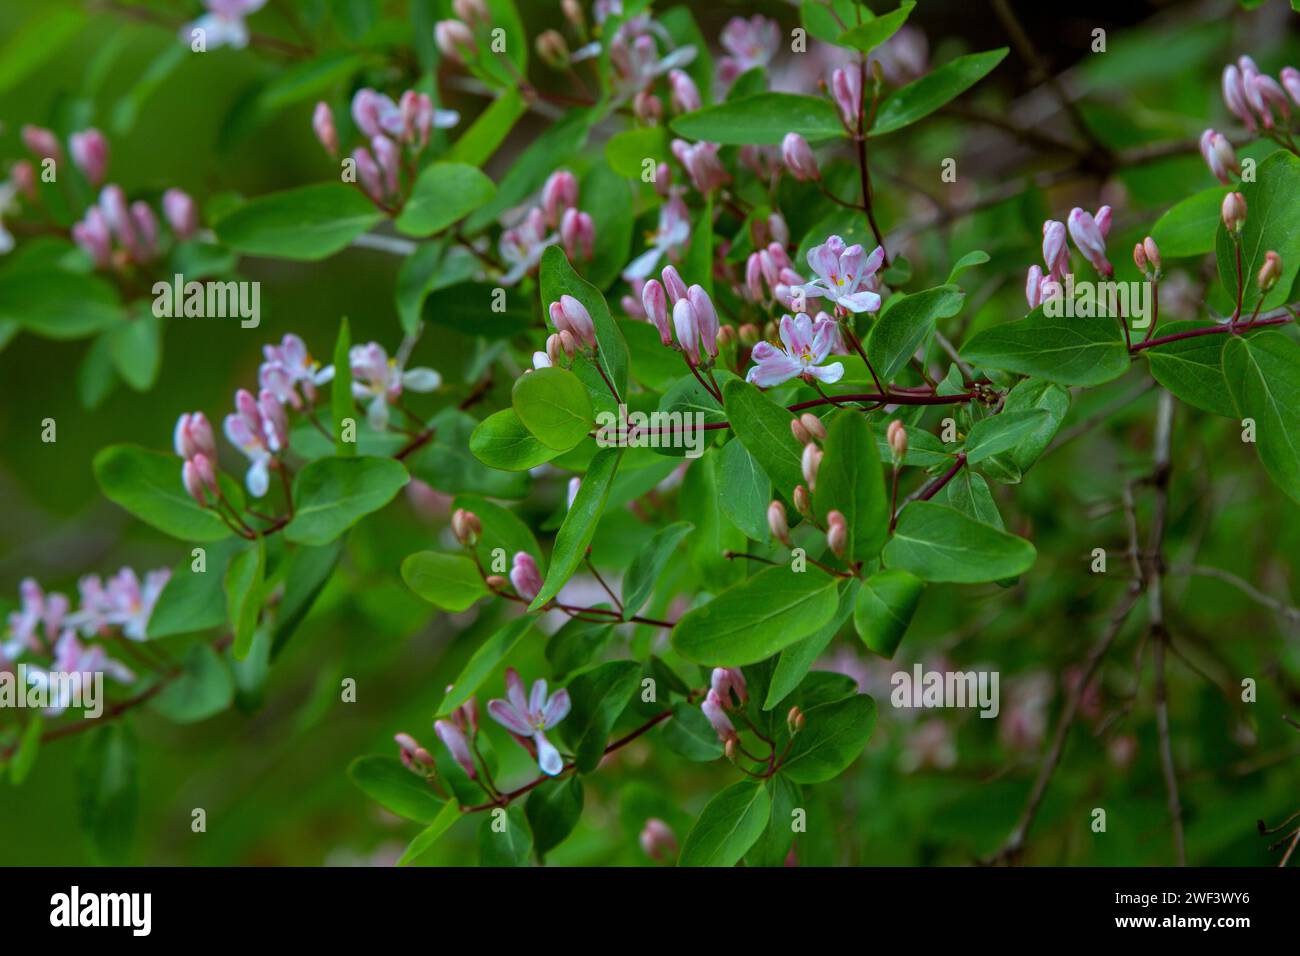 Schöner blühender Busch von Lonicera Tatarica – aus nächster Nähe rosa Blüten, Knospen und grüne Blätter. Naturdetails im Frühling. Stockfoto